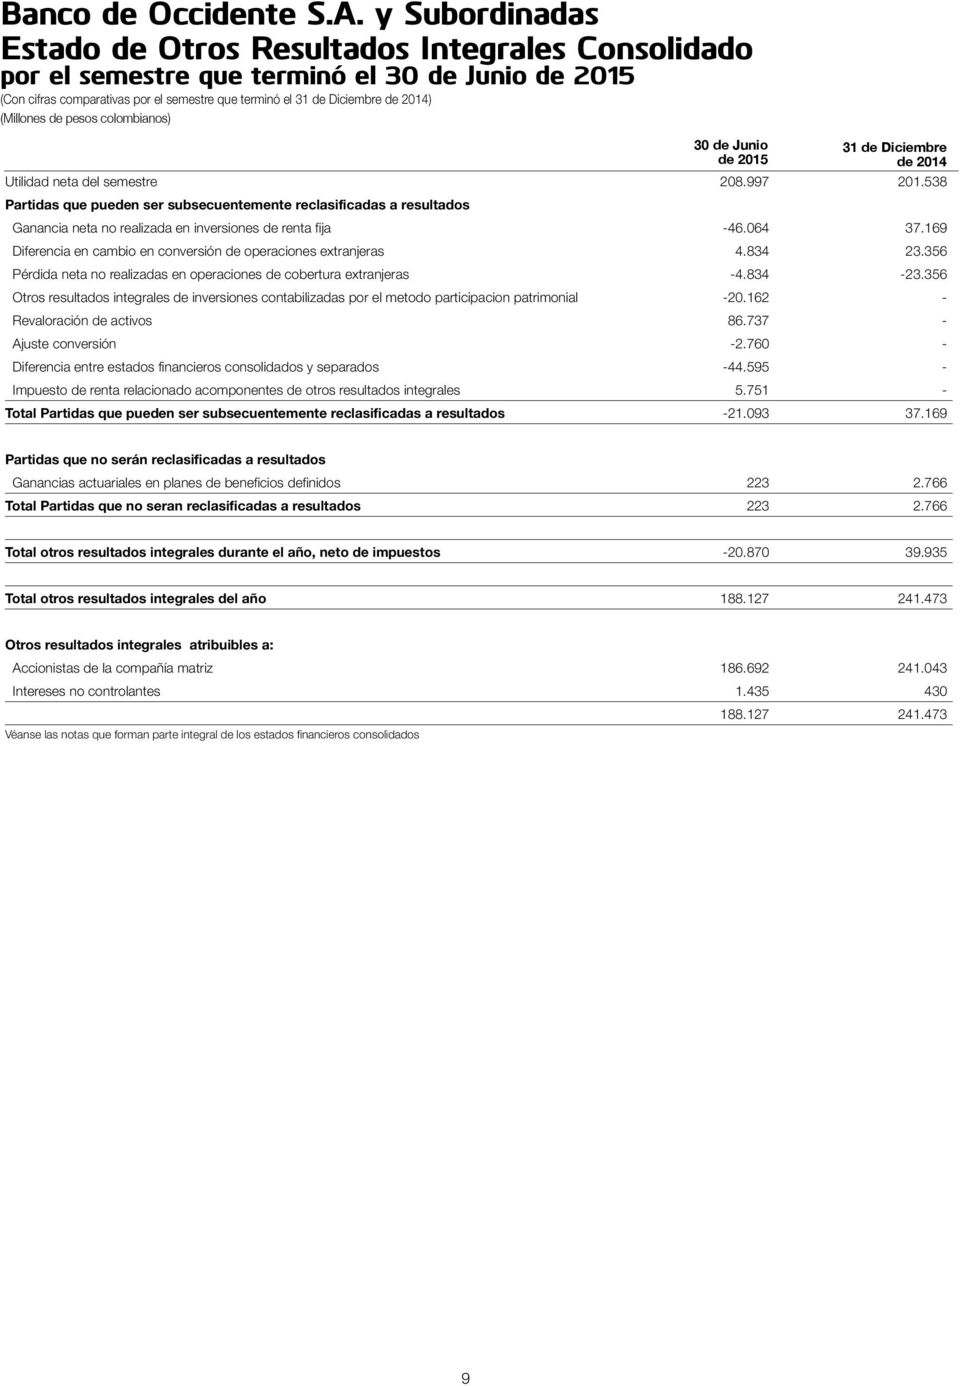 538 Partidas que pueden ser subsecuentemente reclasificadas a resultados 30 de Junio de 2015 31 de Diciembre de 2014 Ganancia neta no realizada en inversiones de renta fija -46.064 37.